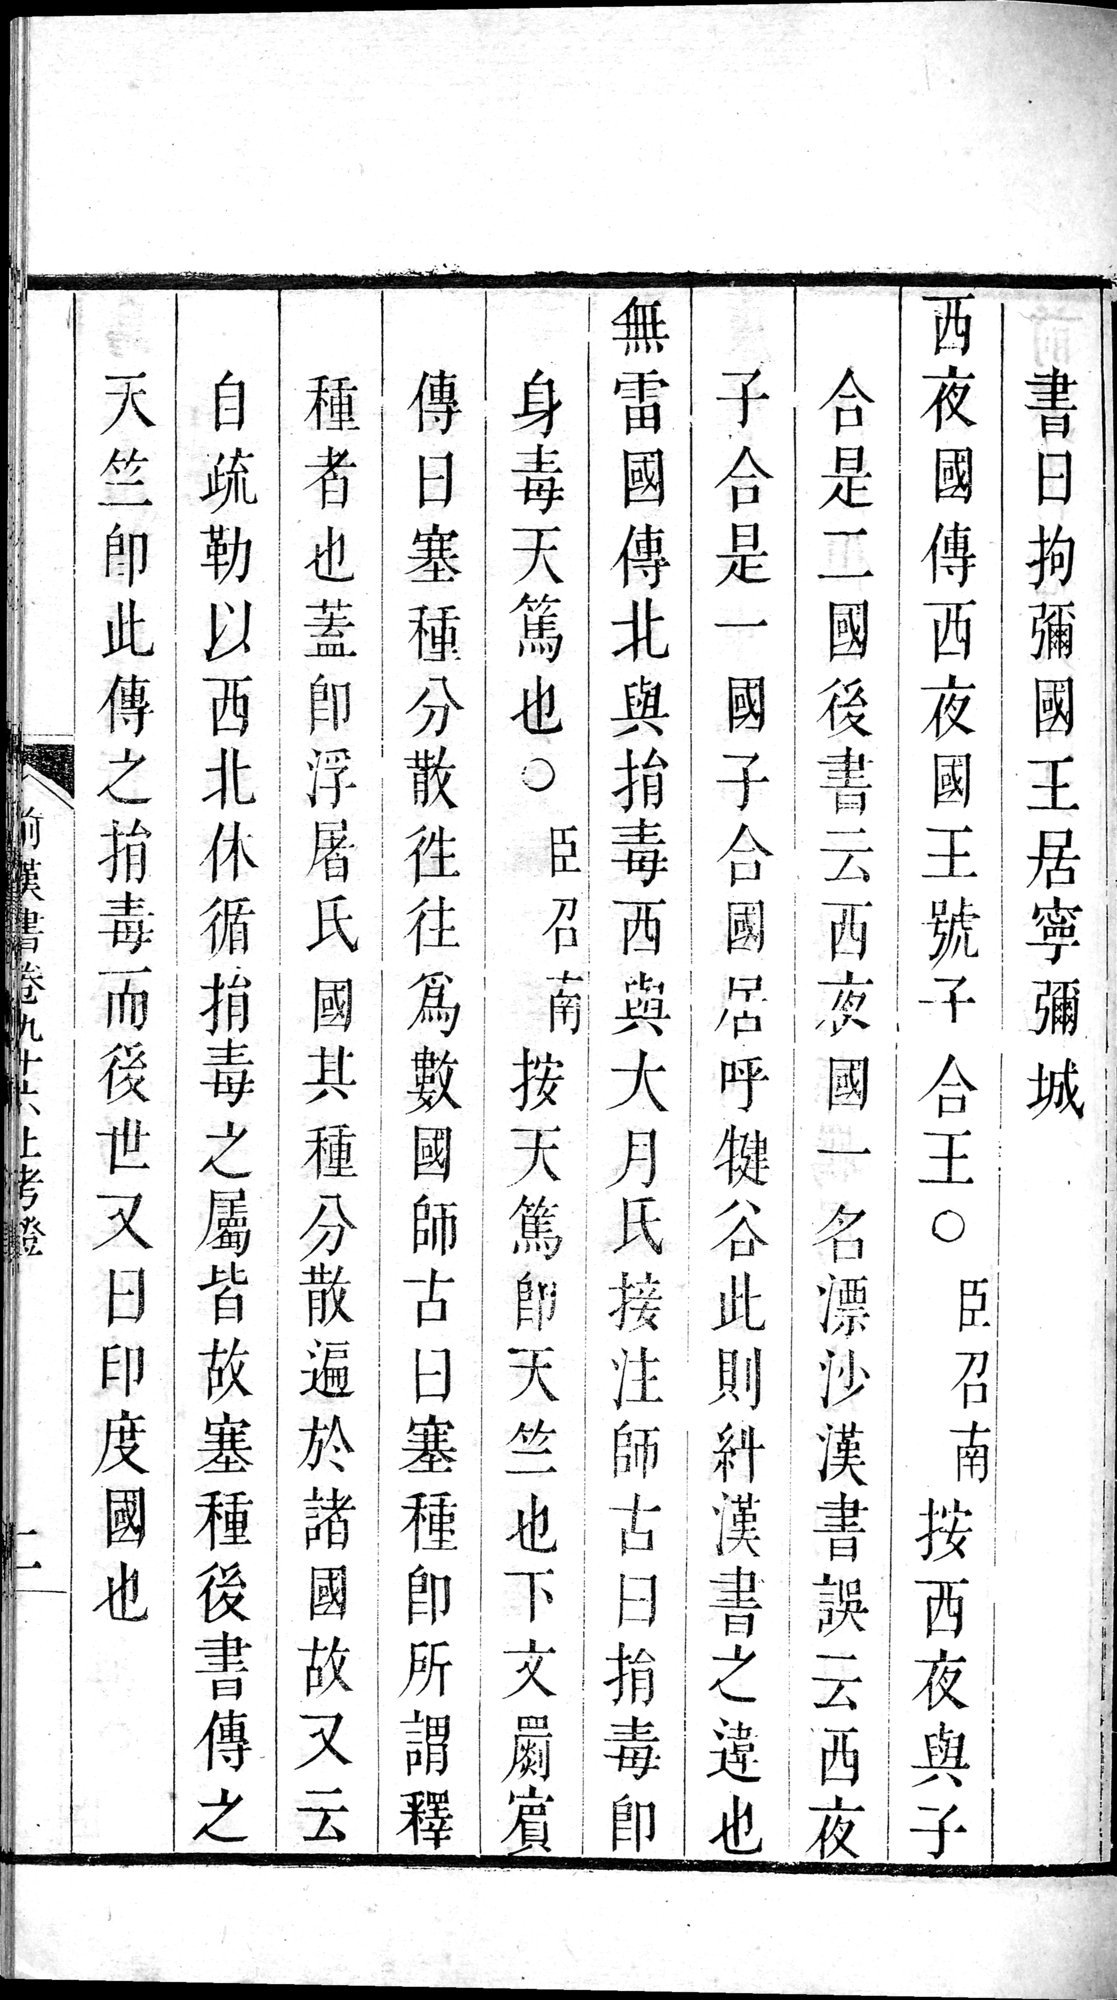 前漢書 : vol.96 top / Page 43 (Grayscale High Resolution Image)